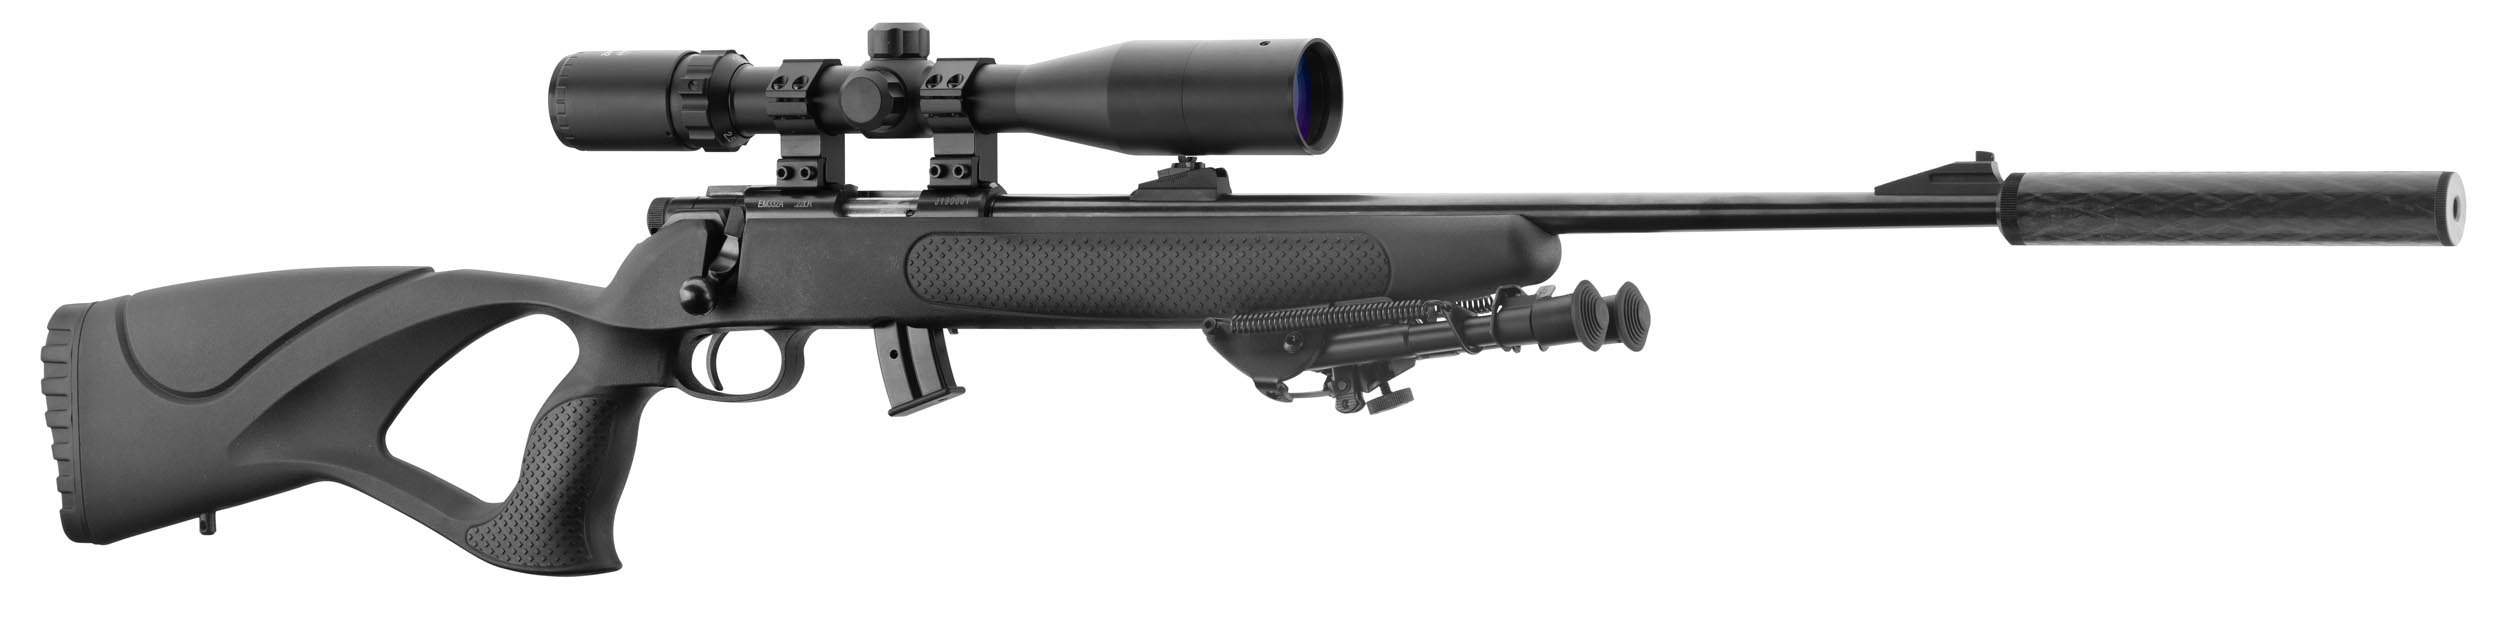 Carabine 22Lr Black Ops Manufacture Equality Maker + Lunette